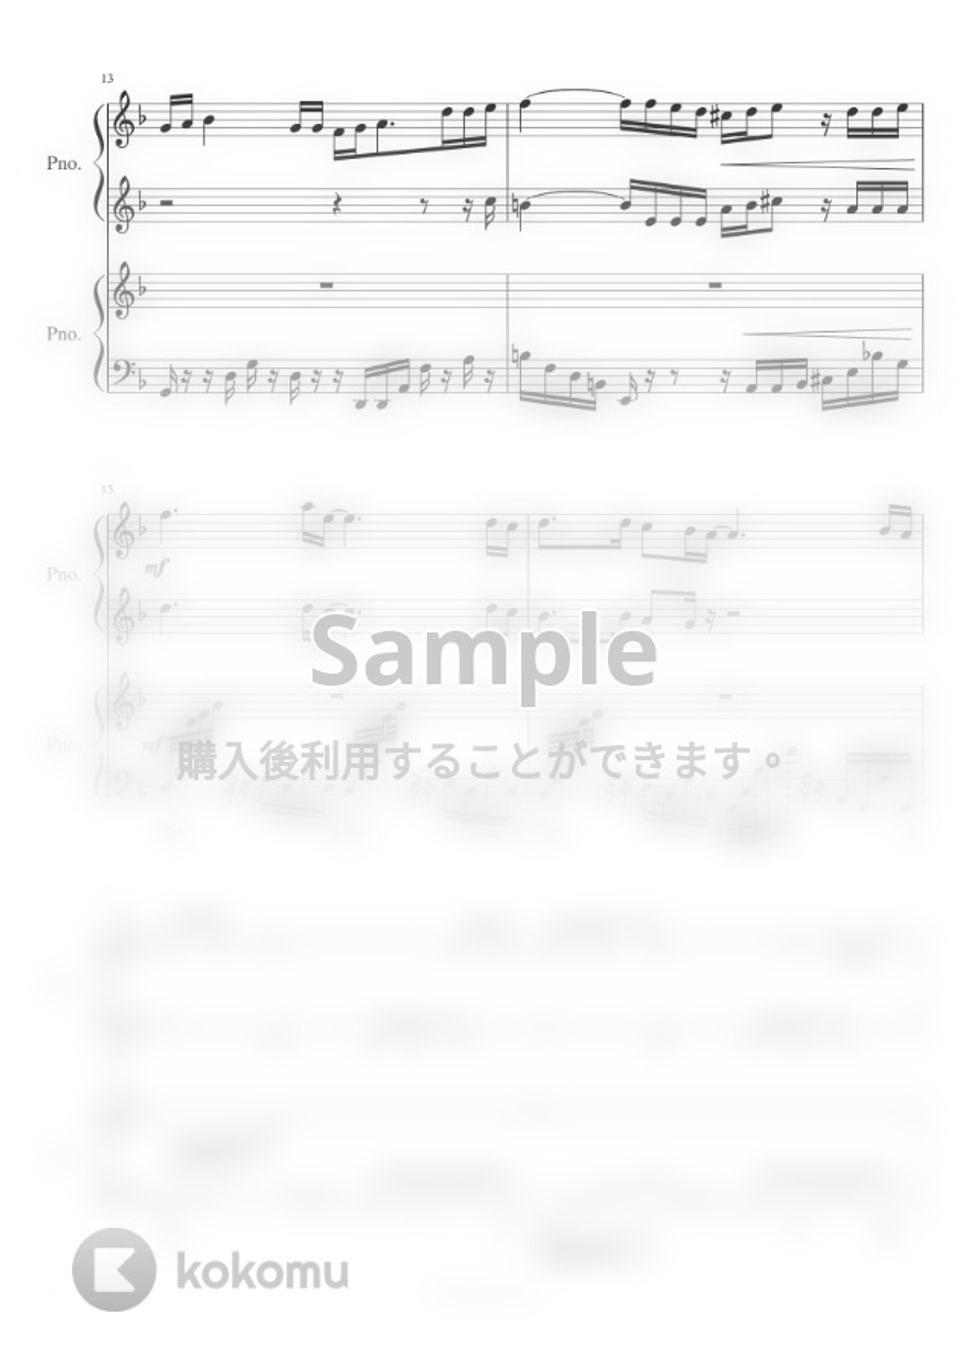 いきものがかり - YELL (連弾：Nコン・卒業ソング) by Trohishima